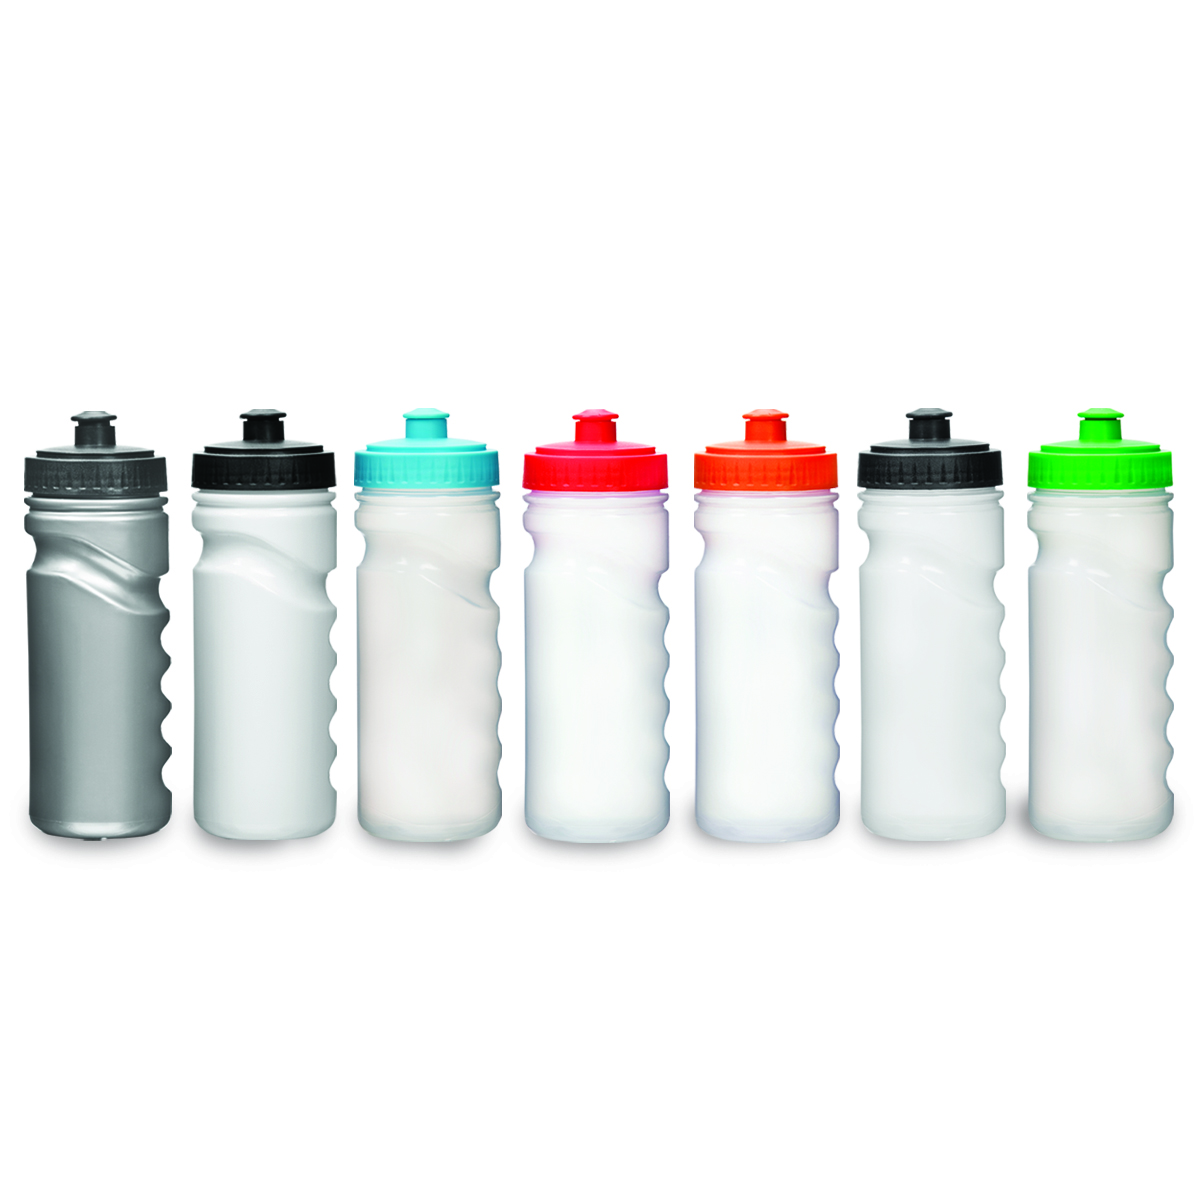 ג’ירו - בקבוק שתיה נפח 500 מ"ל. פיית ספורט.
חומר PE רך.
ללא BPA.
ללא פאטלאטים.